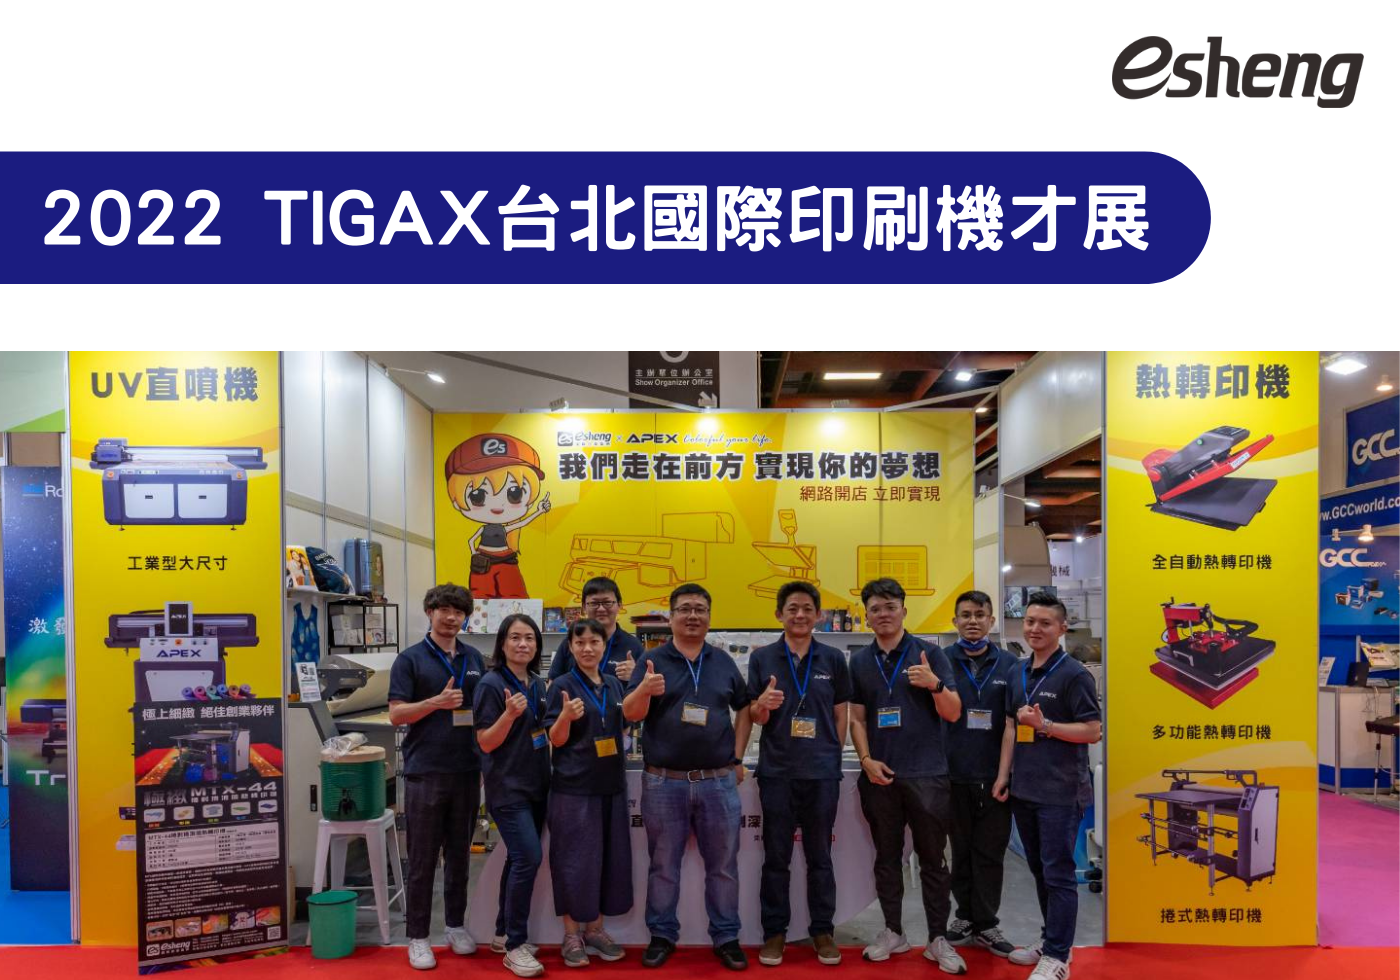 您目前正在查看 2022 冬季 TIGAX台北國際印刷機材展 參展花絮